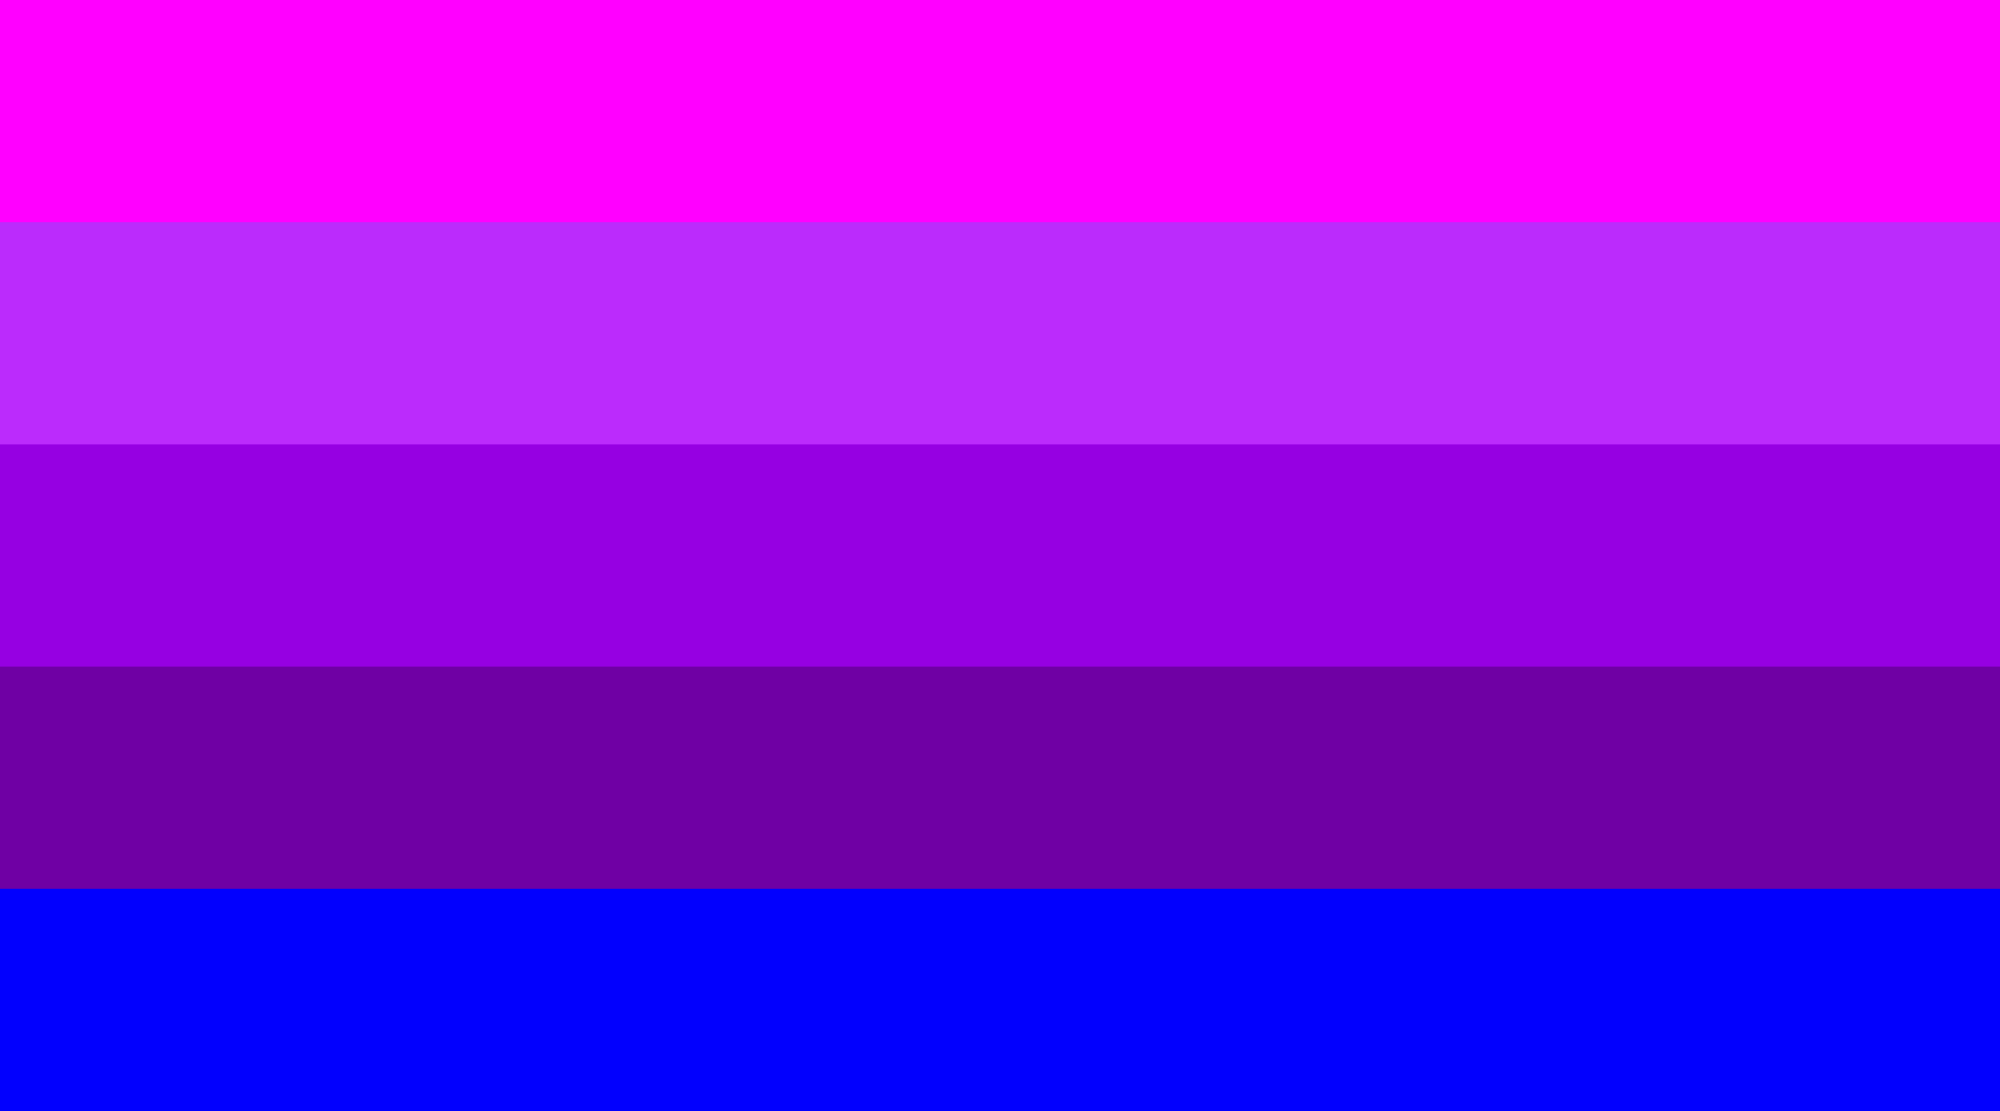 Image of transgender flag